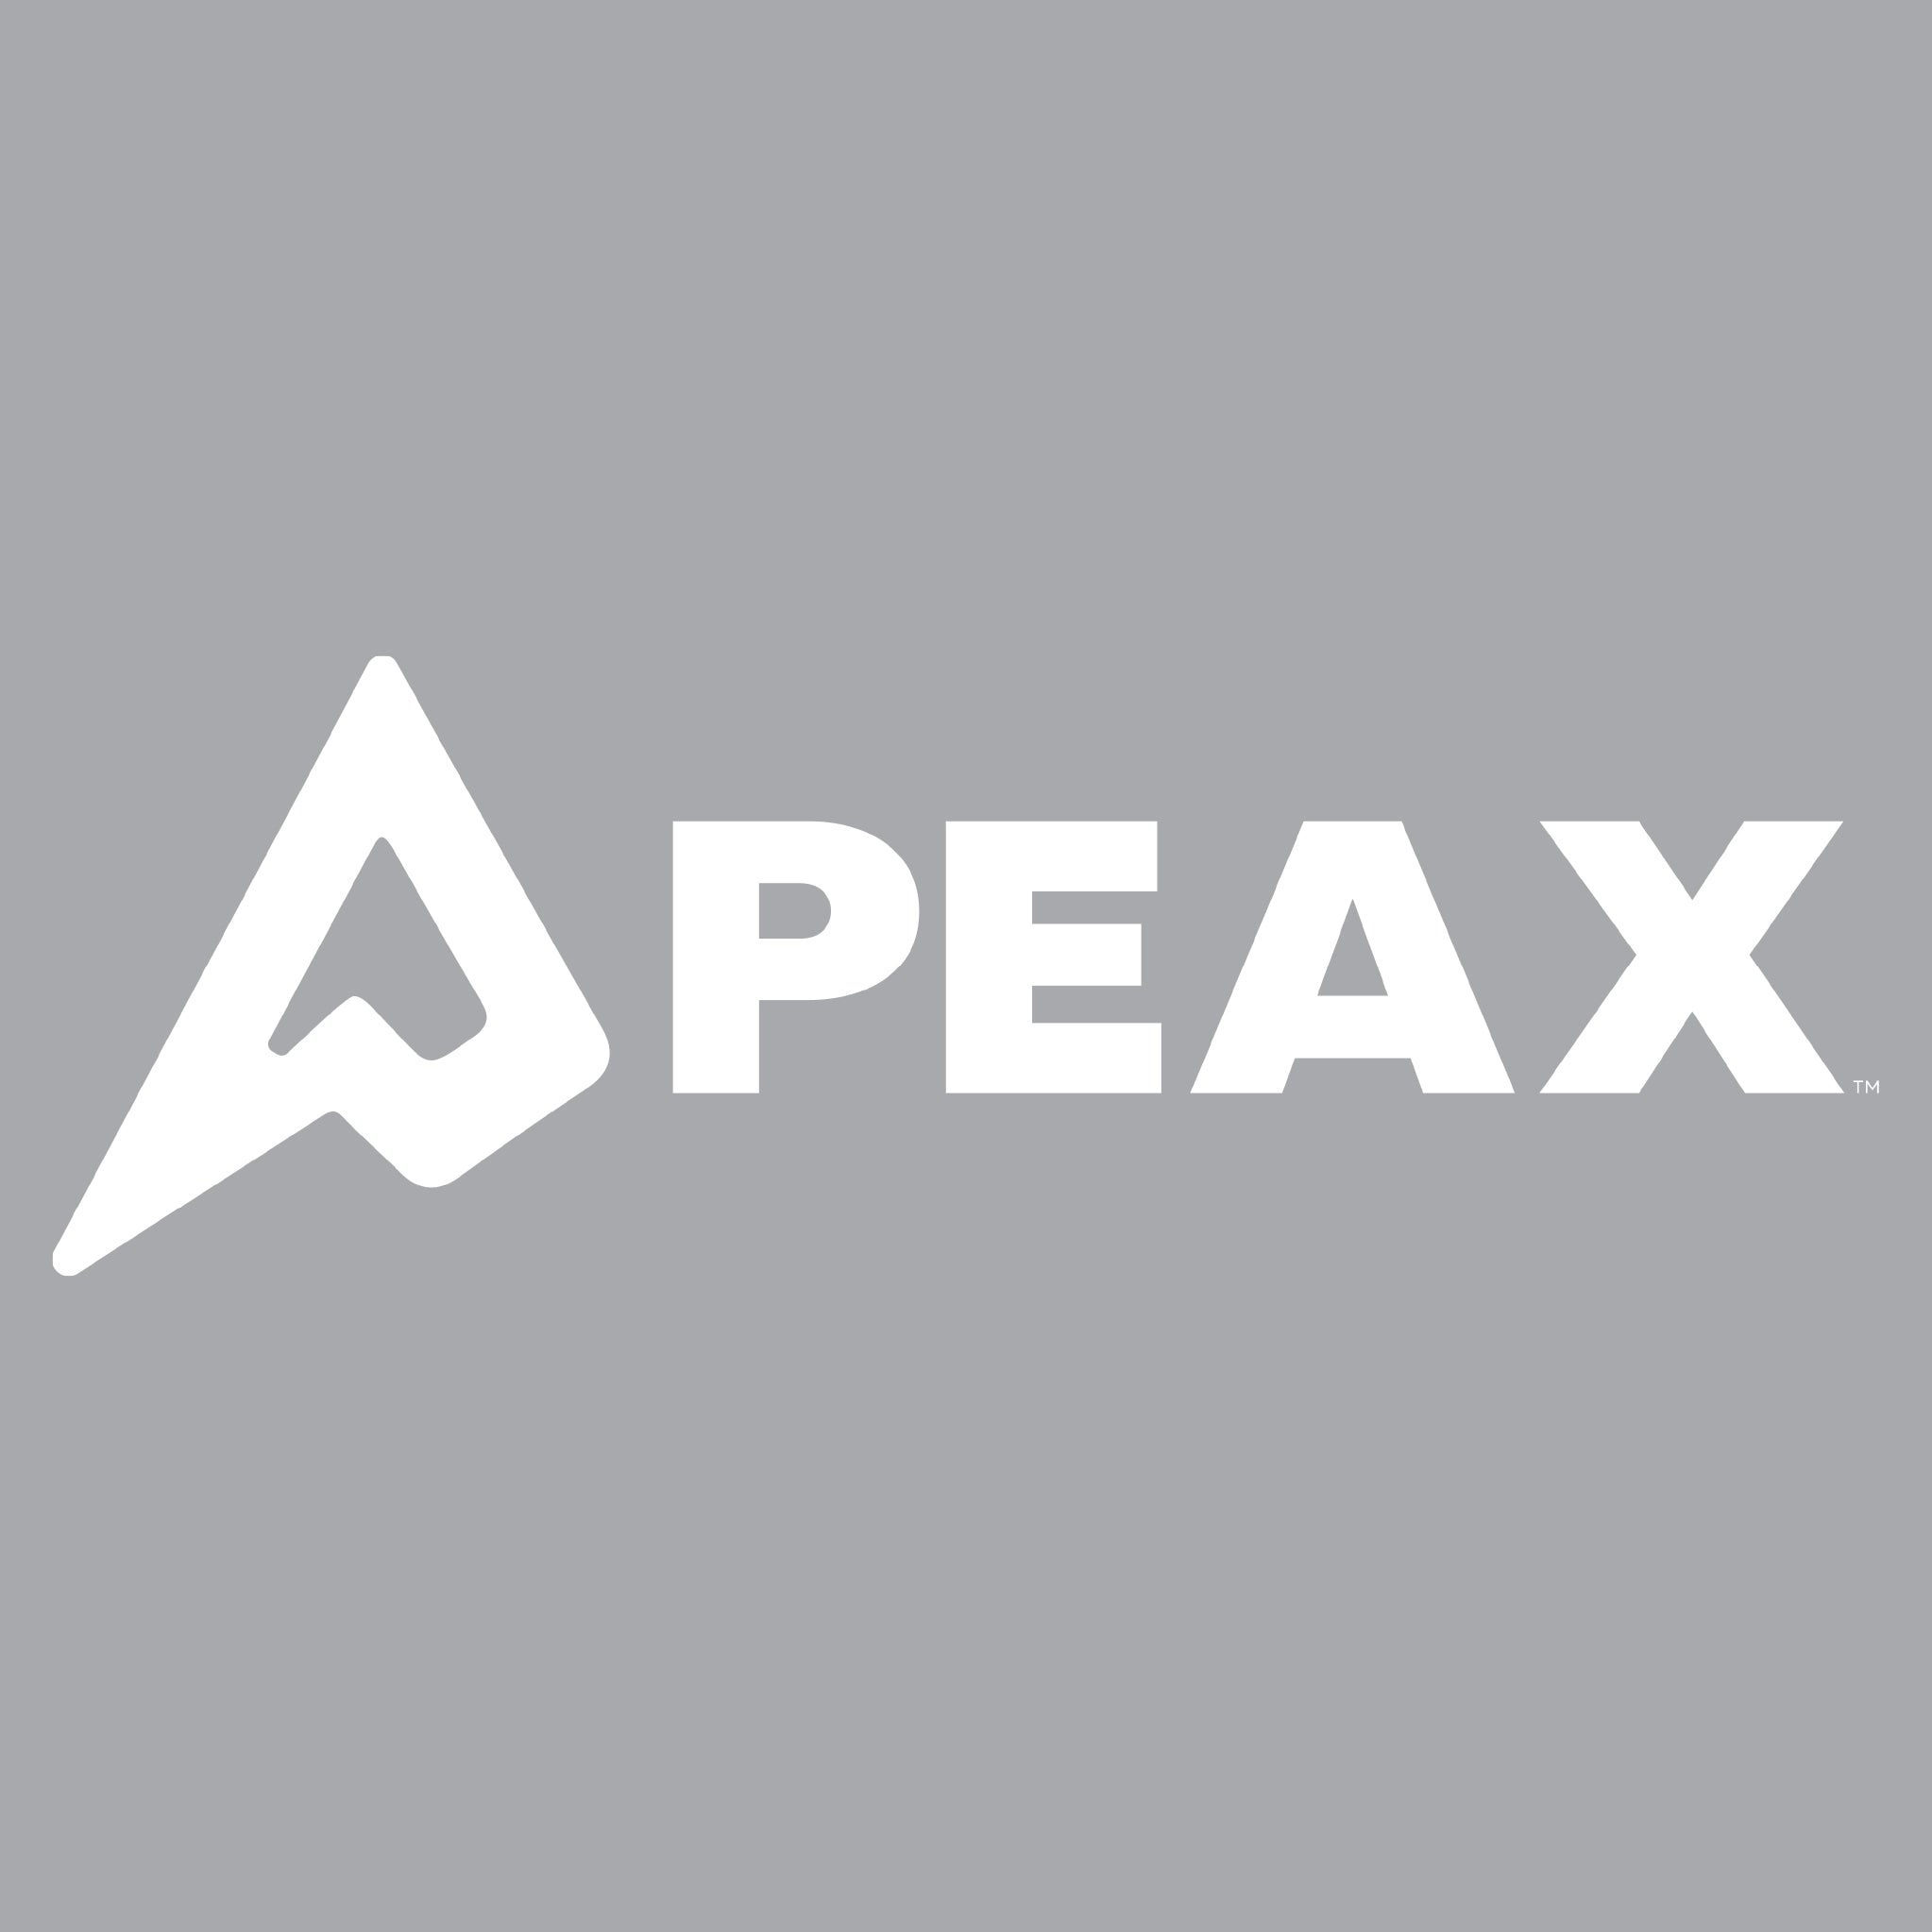 PEAX-TRANSFERDECALSTICKER_Small_a8125059-dd07-4a9c-bf68-68edbf7bfc25.jpg